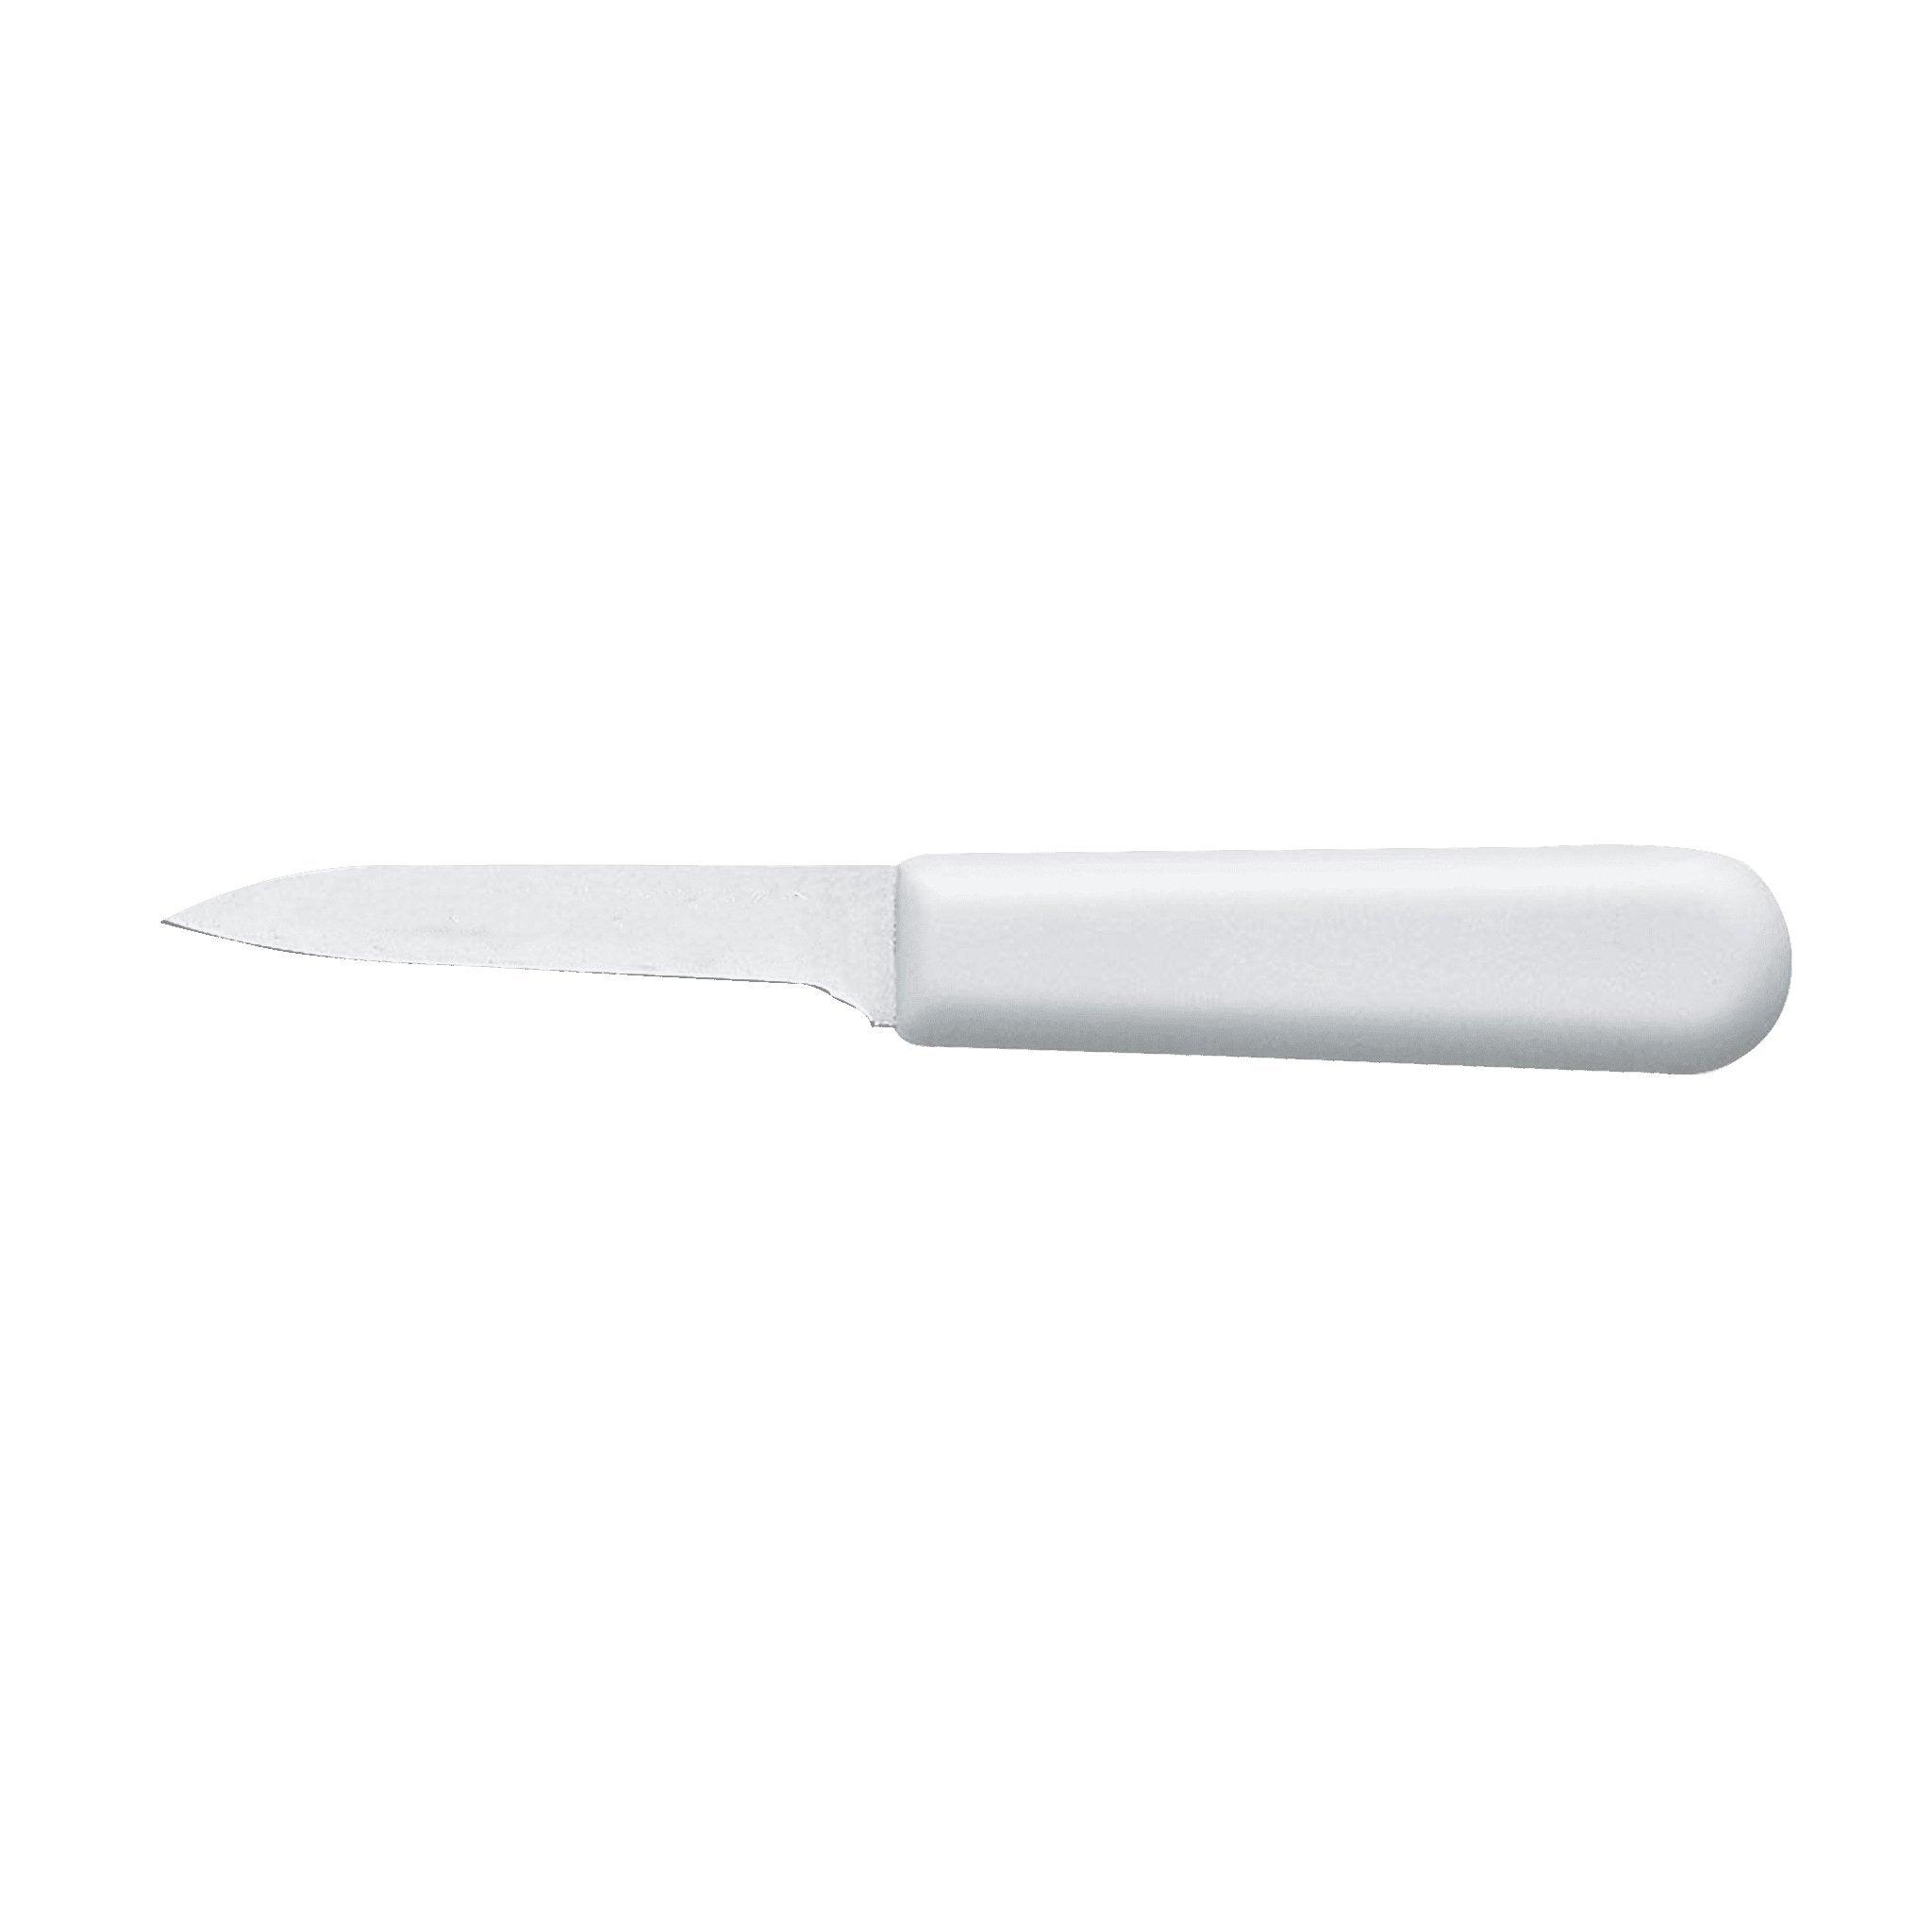 Paring Knife - Matuska Taxidermy Supply Company